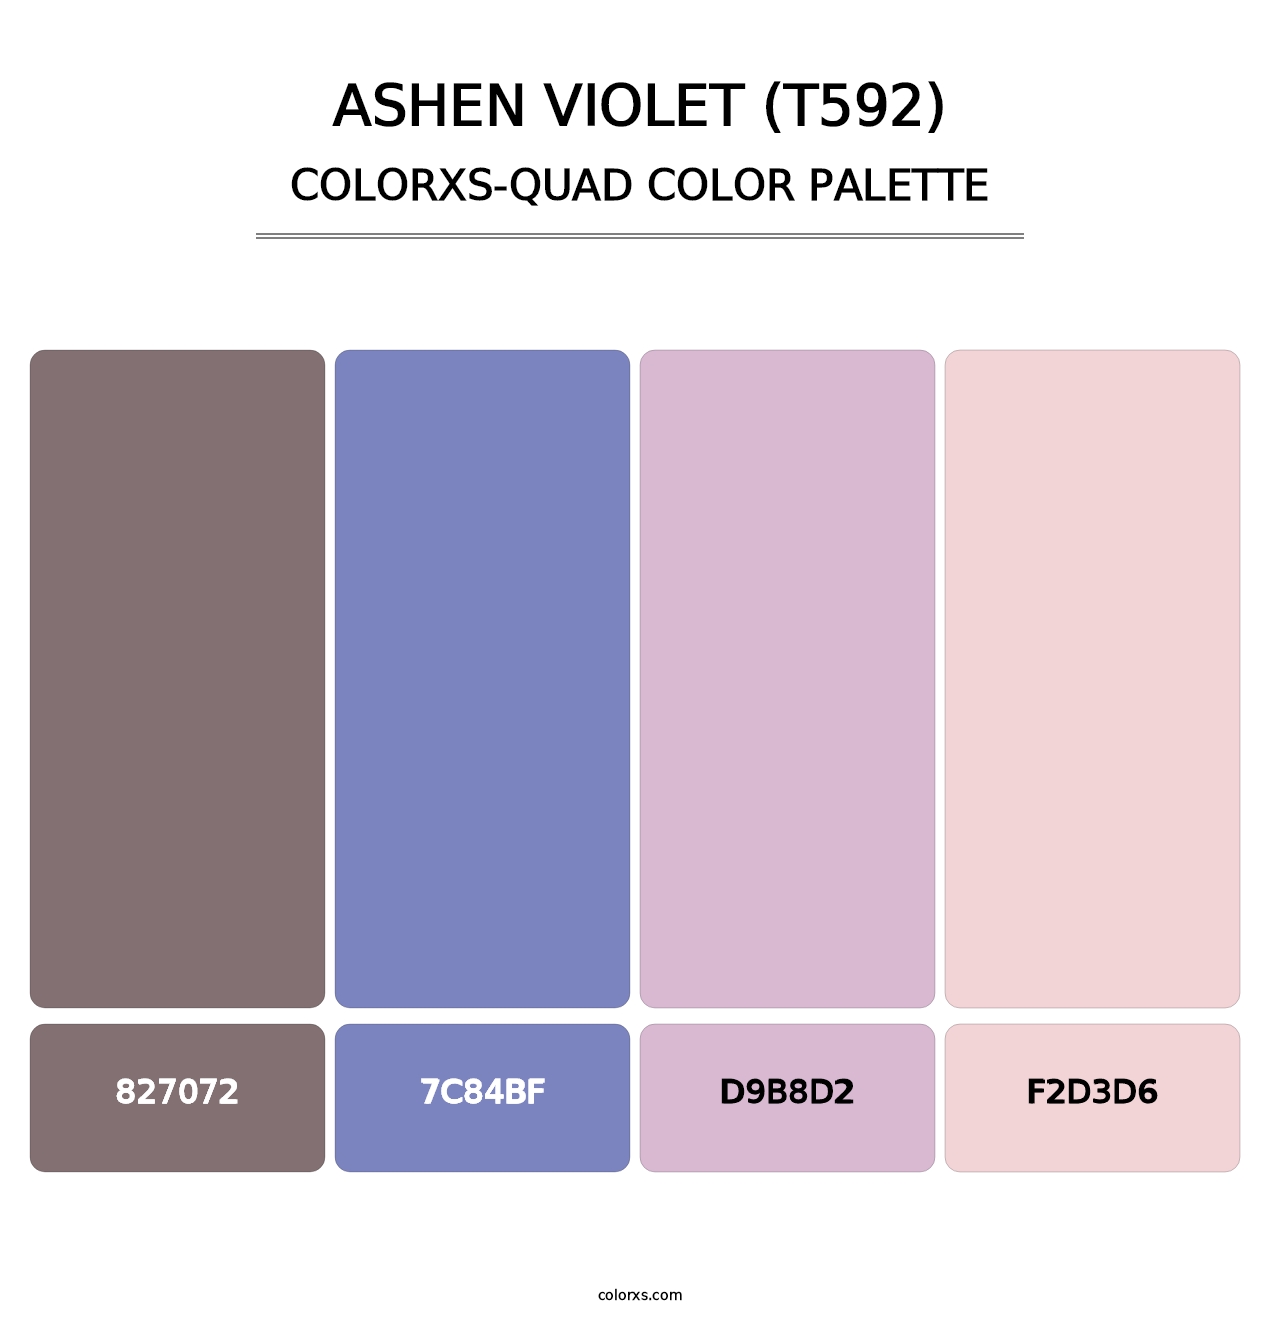 Ashen Violet (T592) - Colorxs Quad Palette